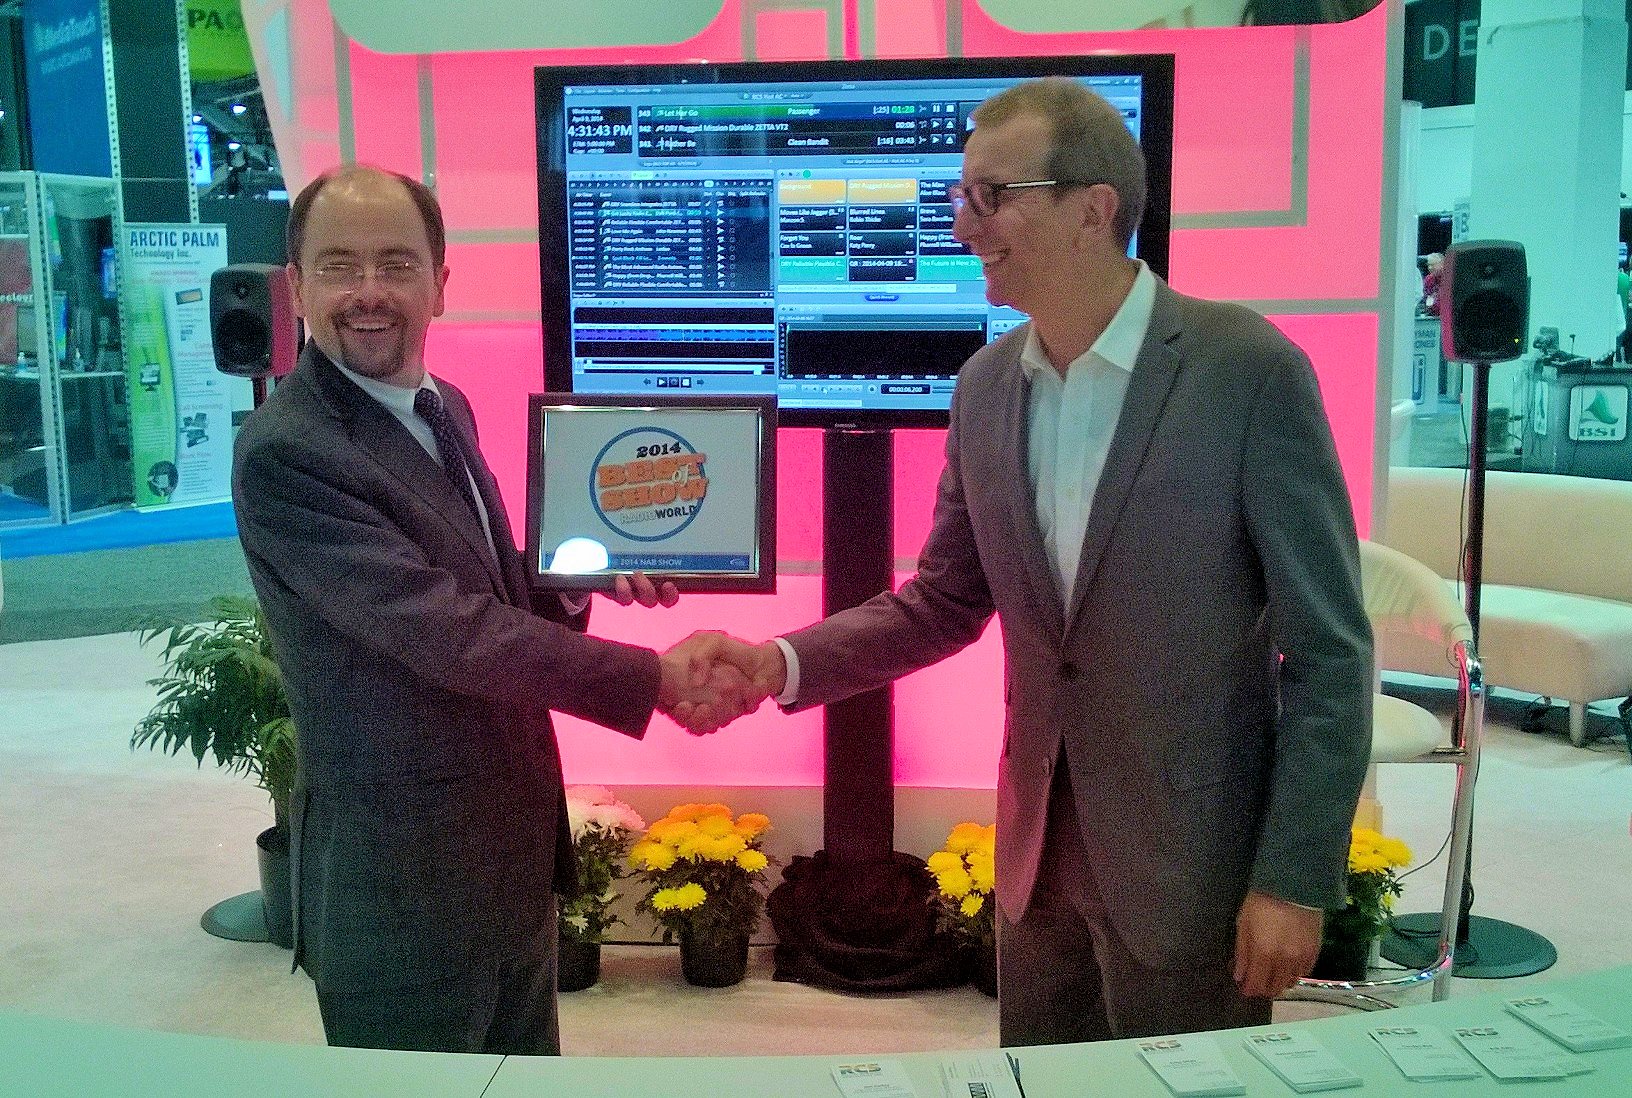 Paul McLane du magazine Radio World (à gauche) a remis le prix international "Best of Show 2014", au NAB de Las Vegas, à Philippe Generali, PDG de RCS